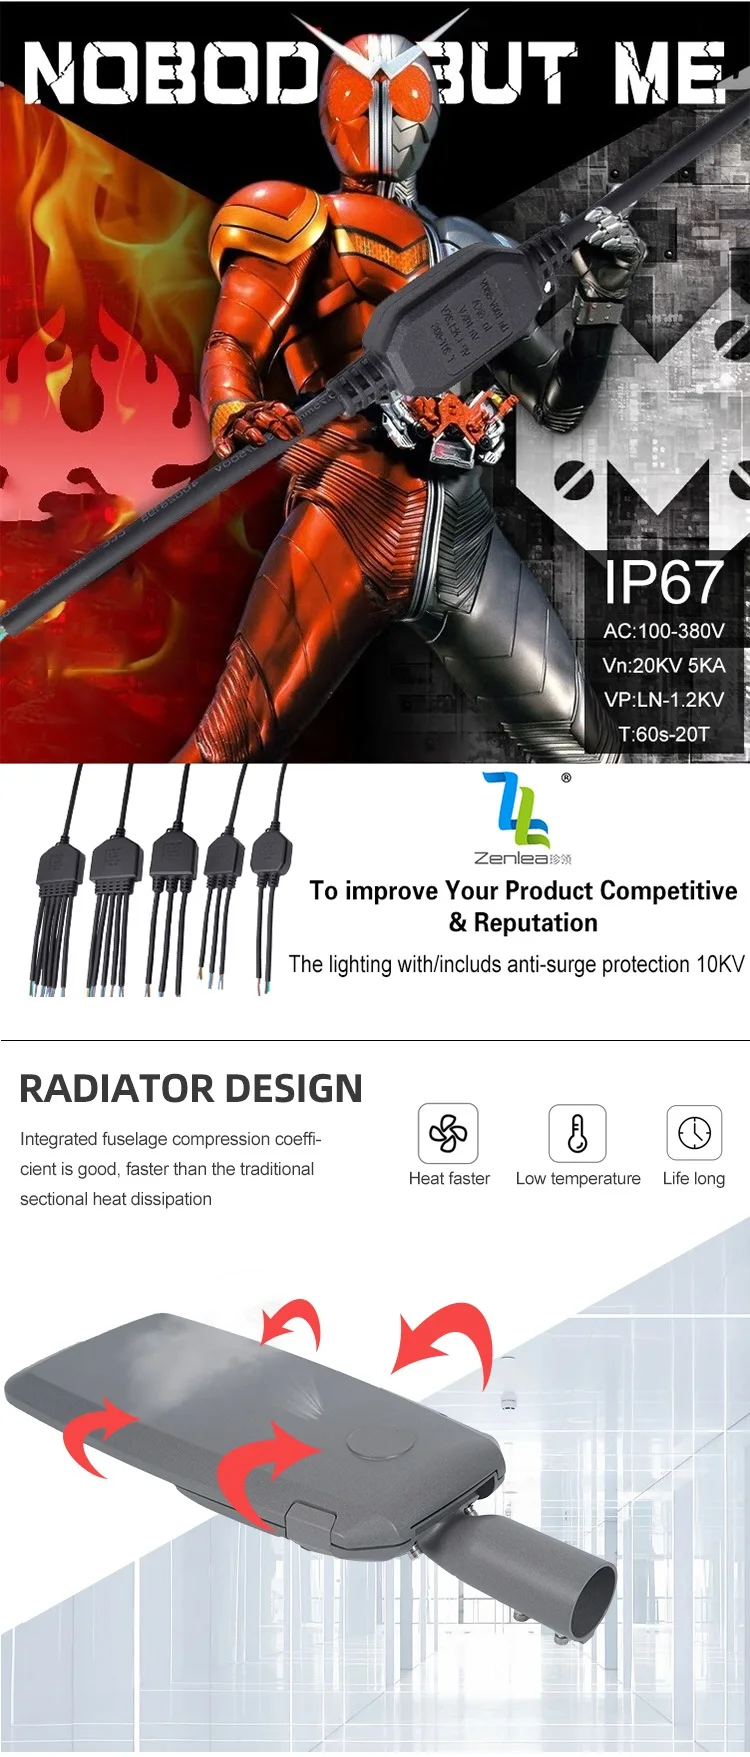 Project Lighting Lamp Waterproof Ip66 Outdoor Aluminum 50w 100w 150w 200w 240w Smd Led Street Light